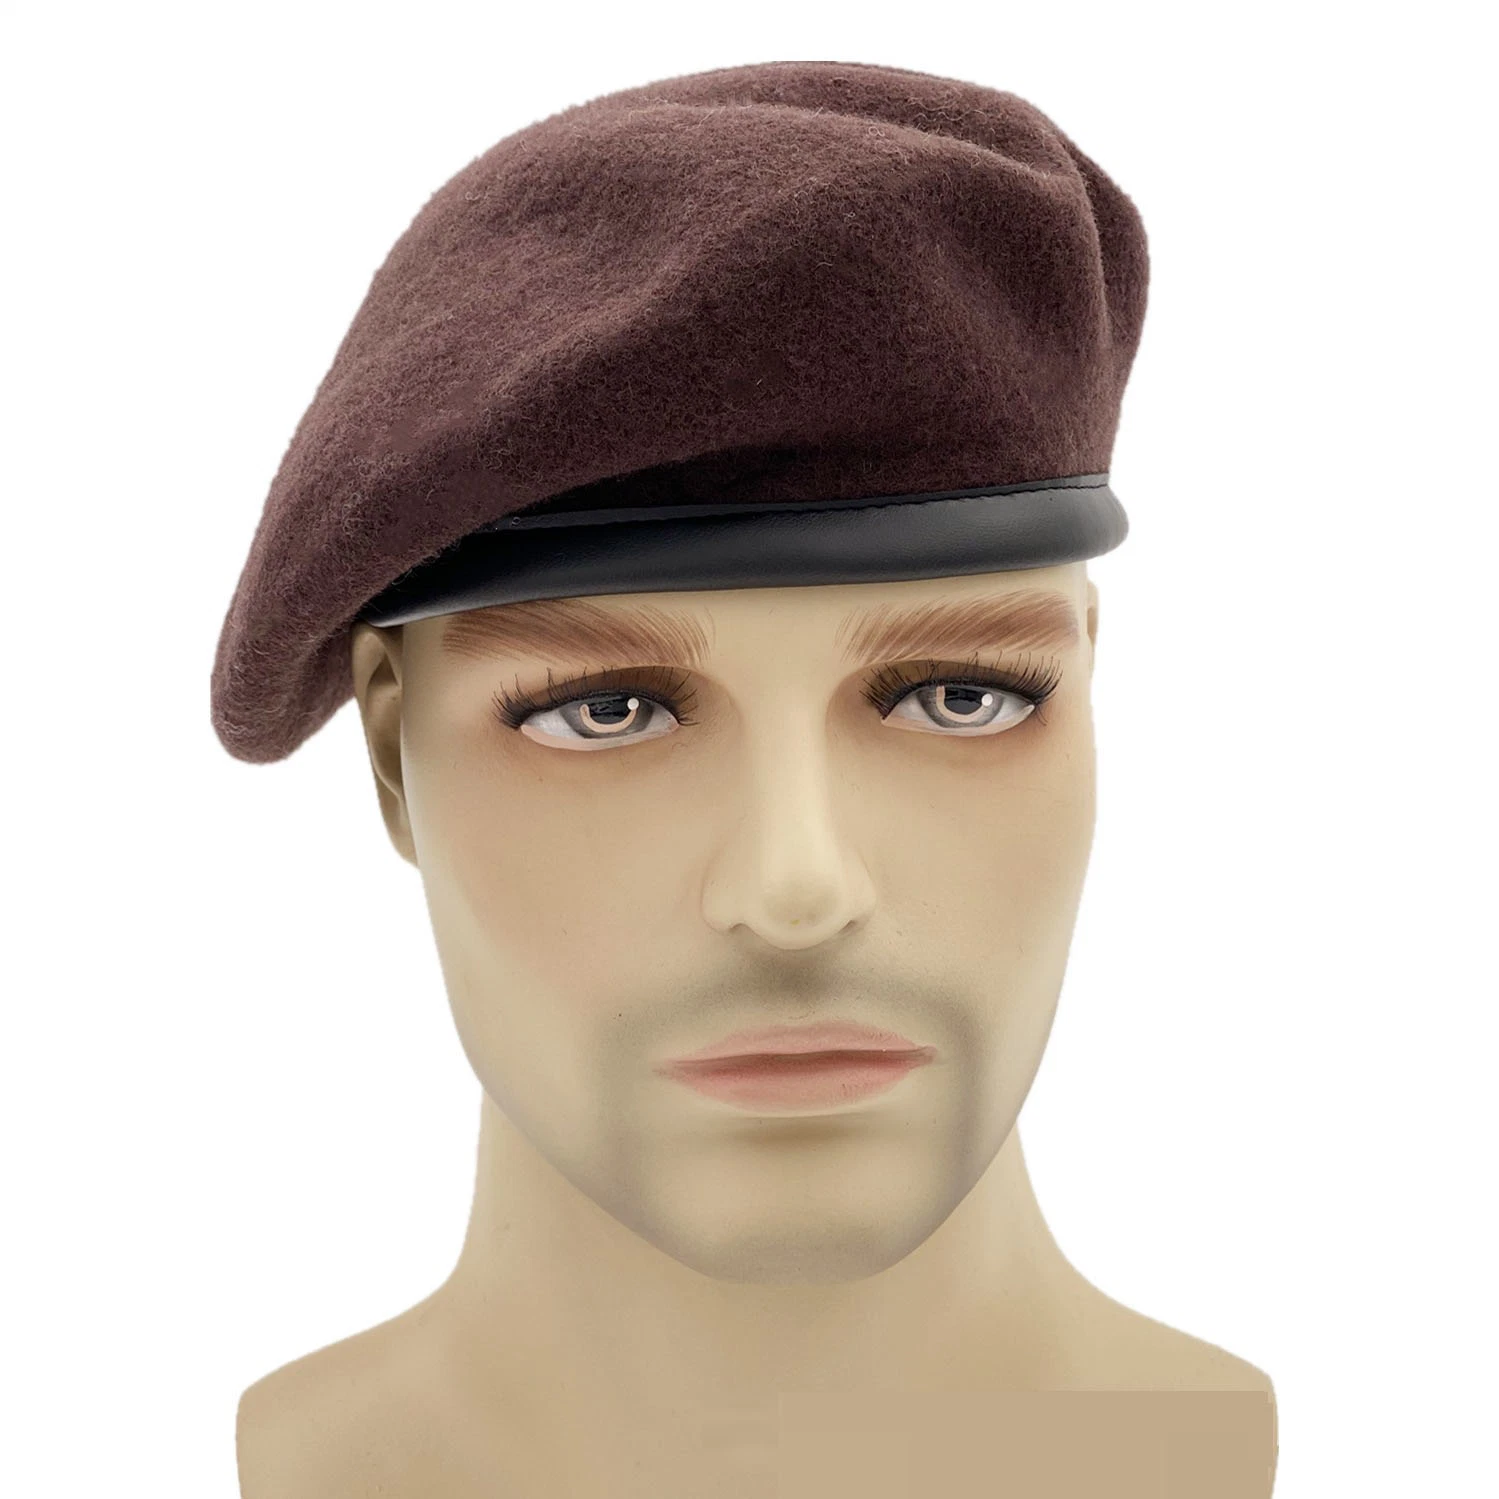 Lana personalizados de estilo militar Beret, Suave Beret Cap Hat